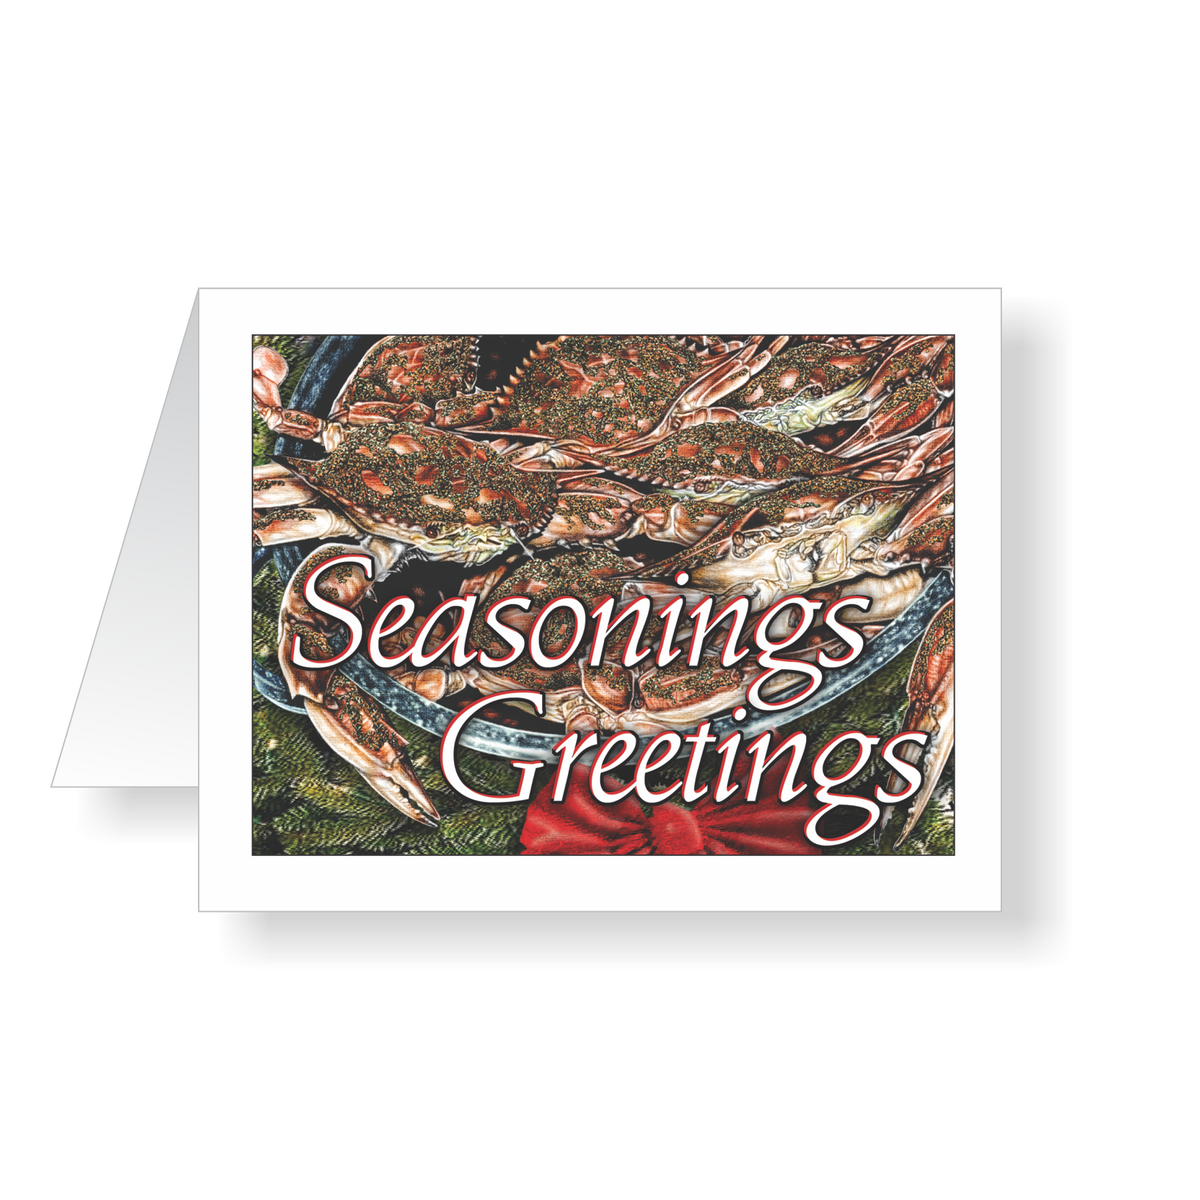 Seasonings Greetings Christmas Cards - JWB Art Unlimited